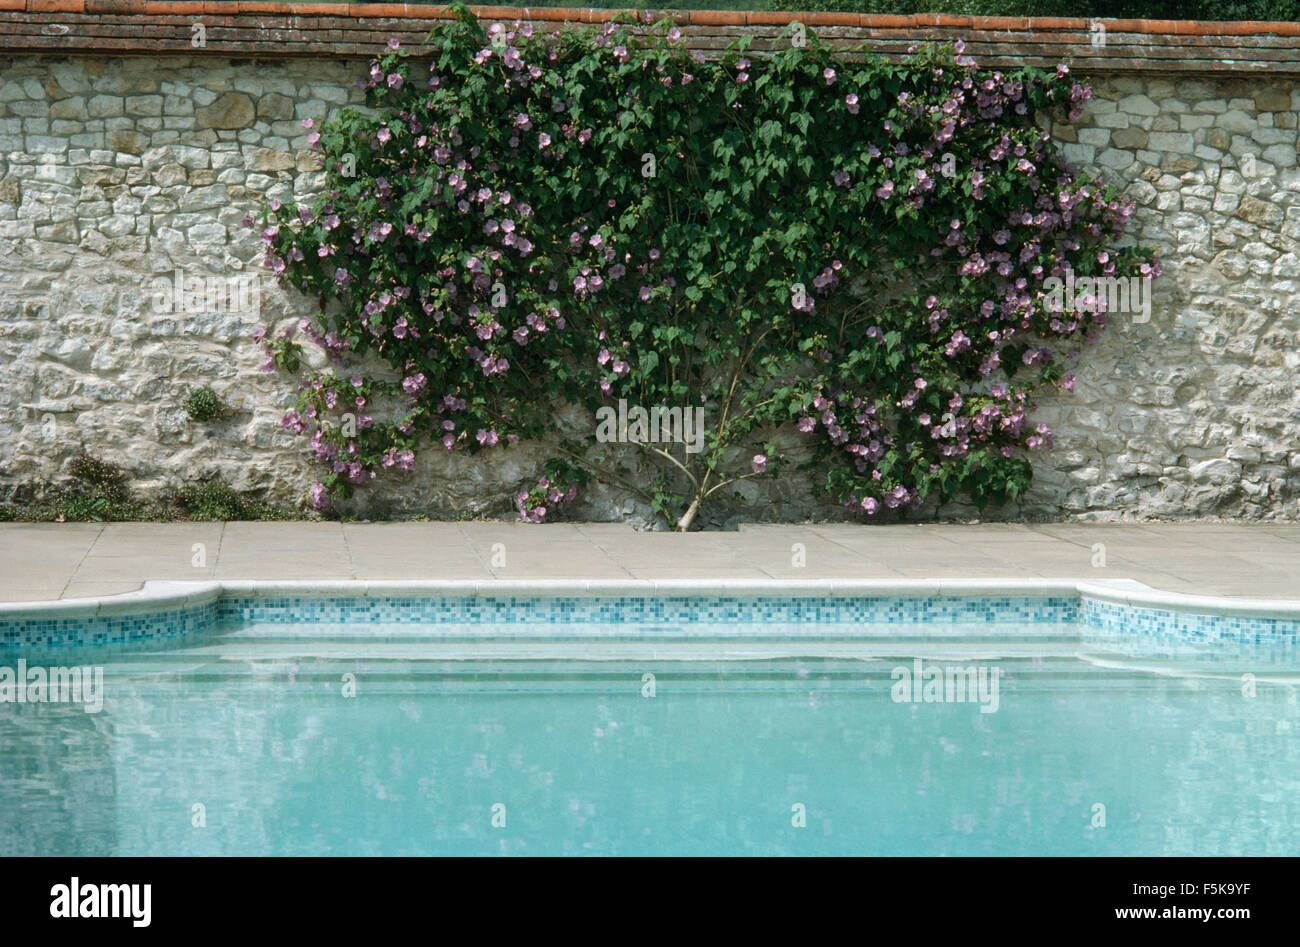 Lila Clematis auf Steinmauer, die einen türkisfarbenen Pool in einem Landschaftsgarten Stockfoto